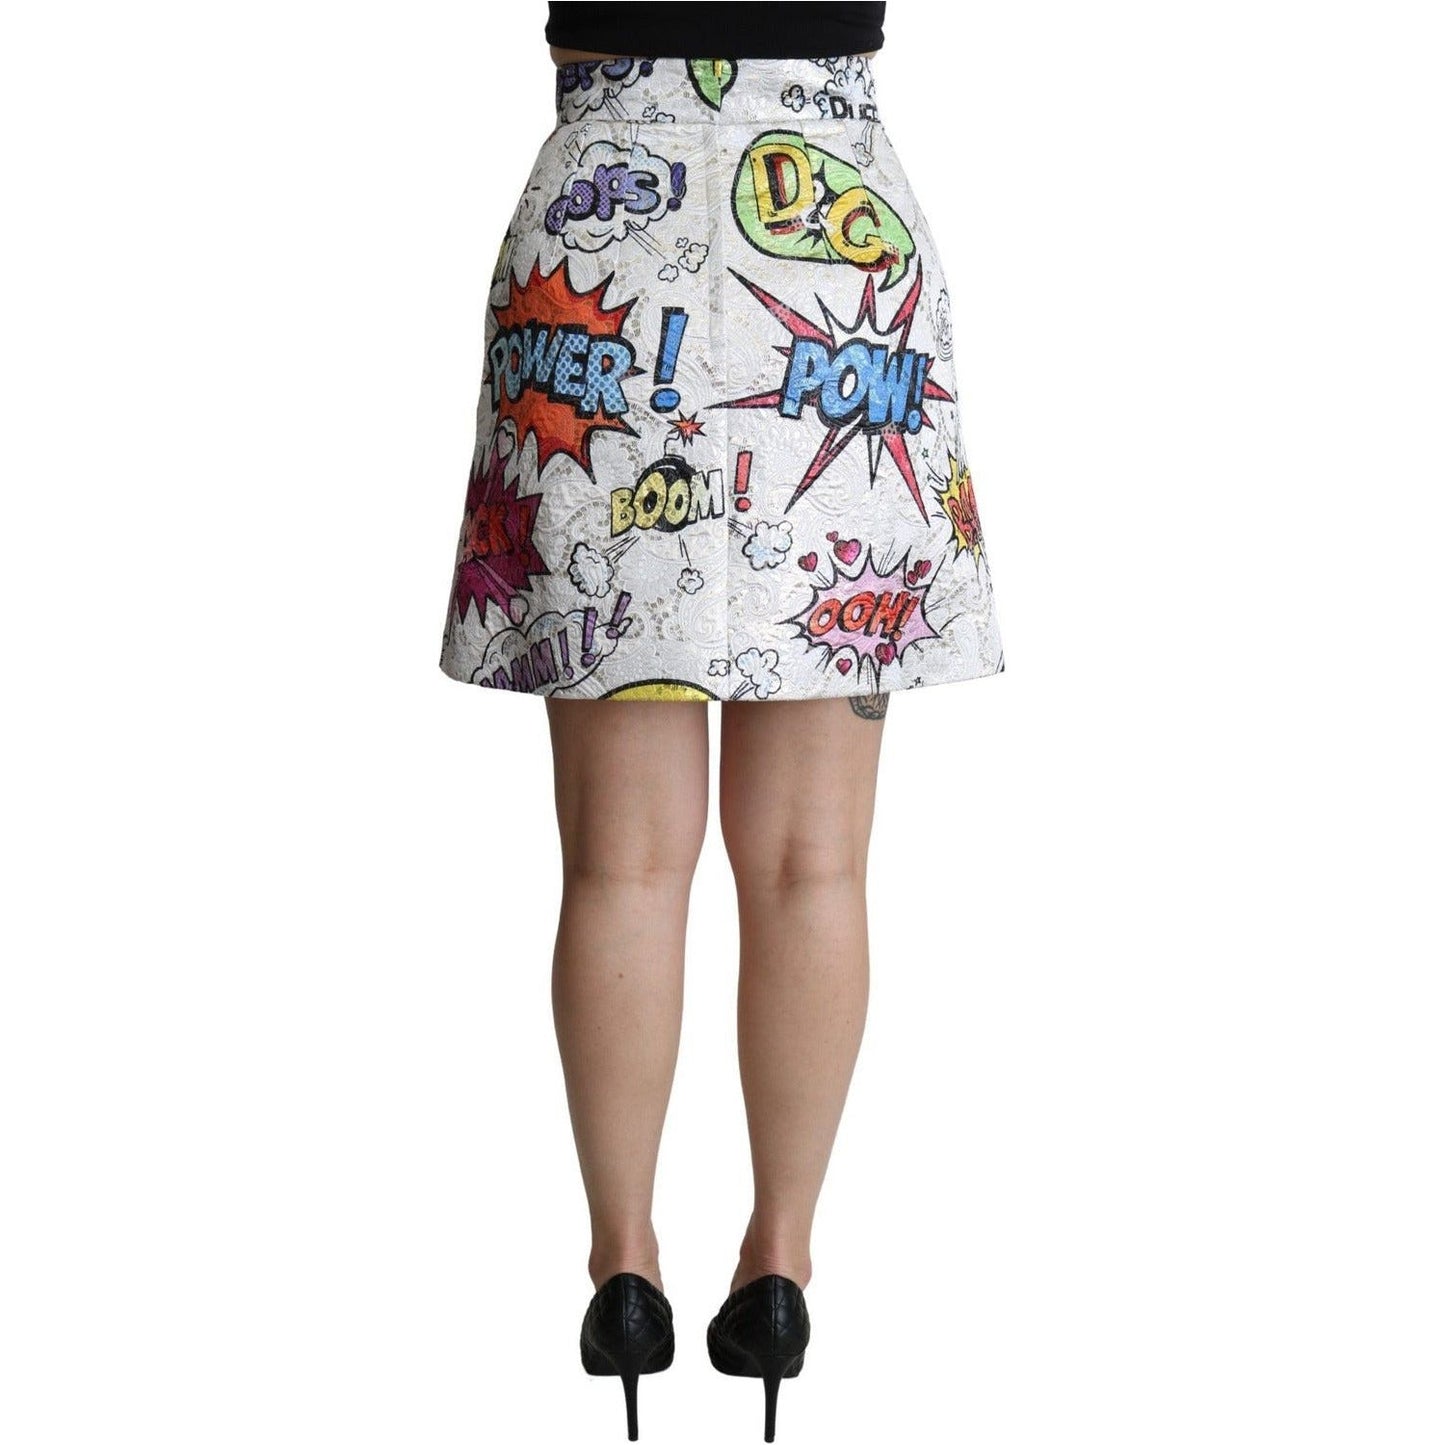 Dolce & Gabbana Chic Cartoon Brocade Mini Skirt white-cartoon-brocade-a-line-high-waist-skirt IMG_1144-scaled-d20d565c-73b.jpg